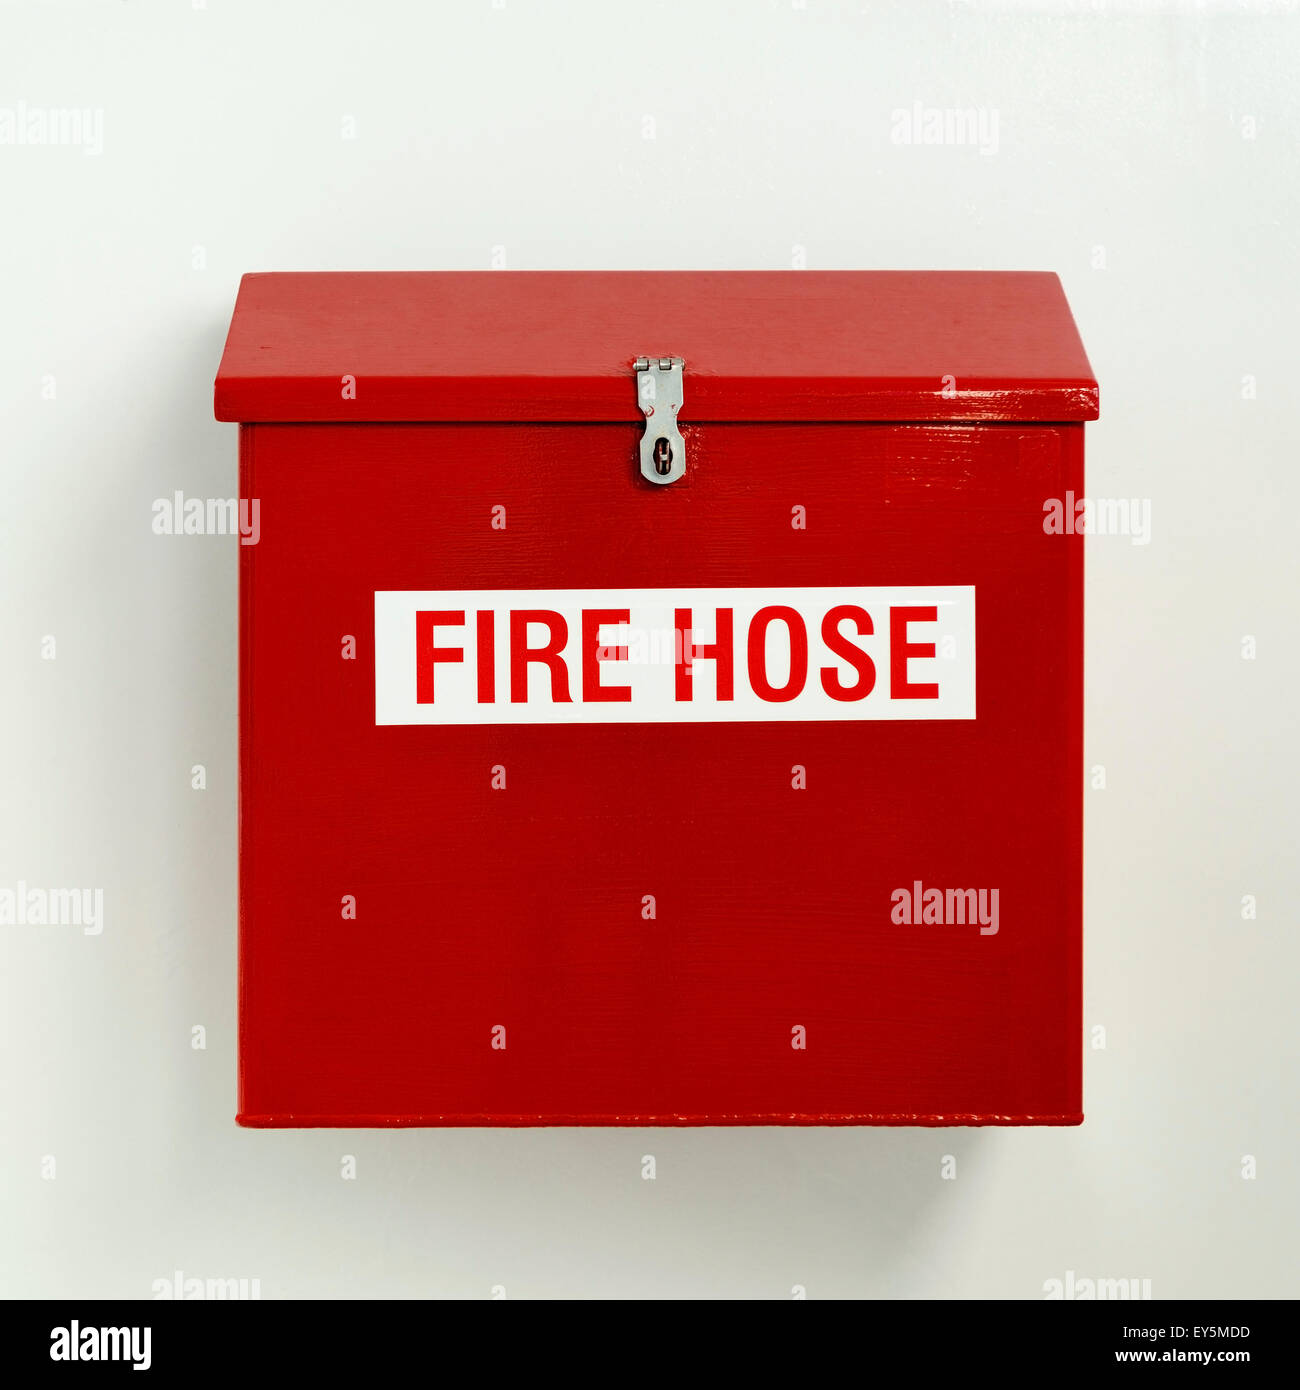 Feuerwehrschlauch box in leuchtendem Rot auf weißer Wand aufgehängt  Stockfotografie - Alamy